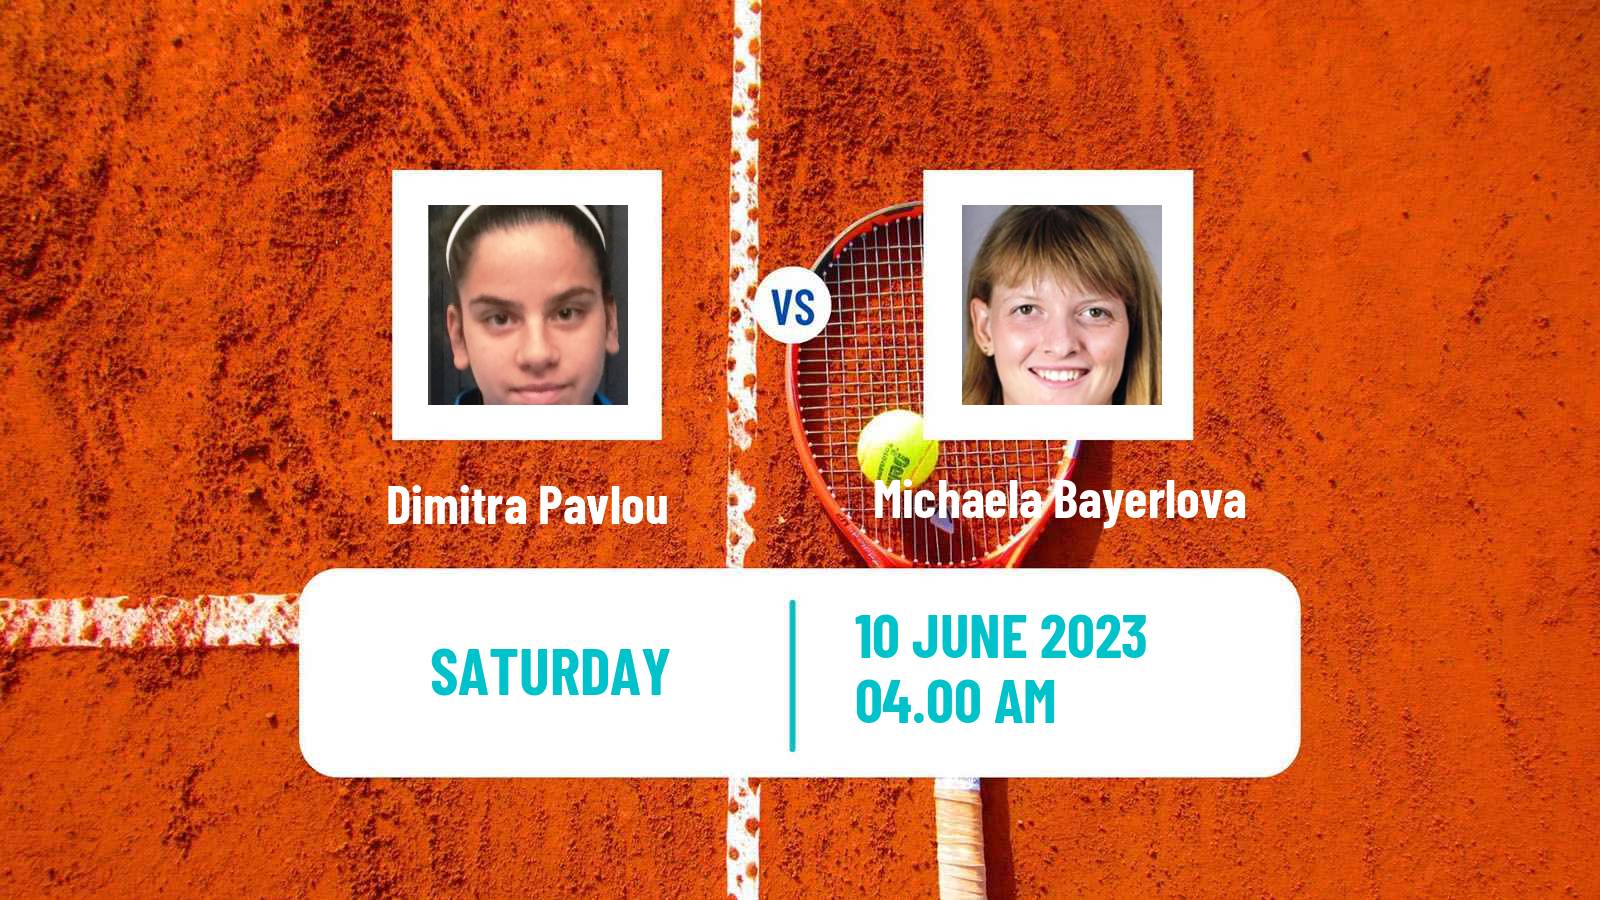 Tennis ITF W25 Kursumlijska Banja 2 Women Dimitra Pavlou - Michaela Bayerlova